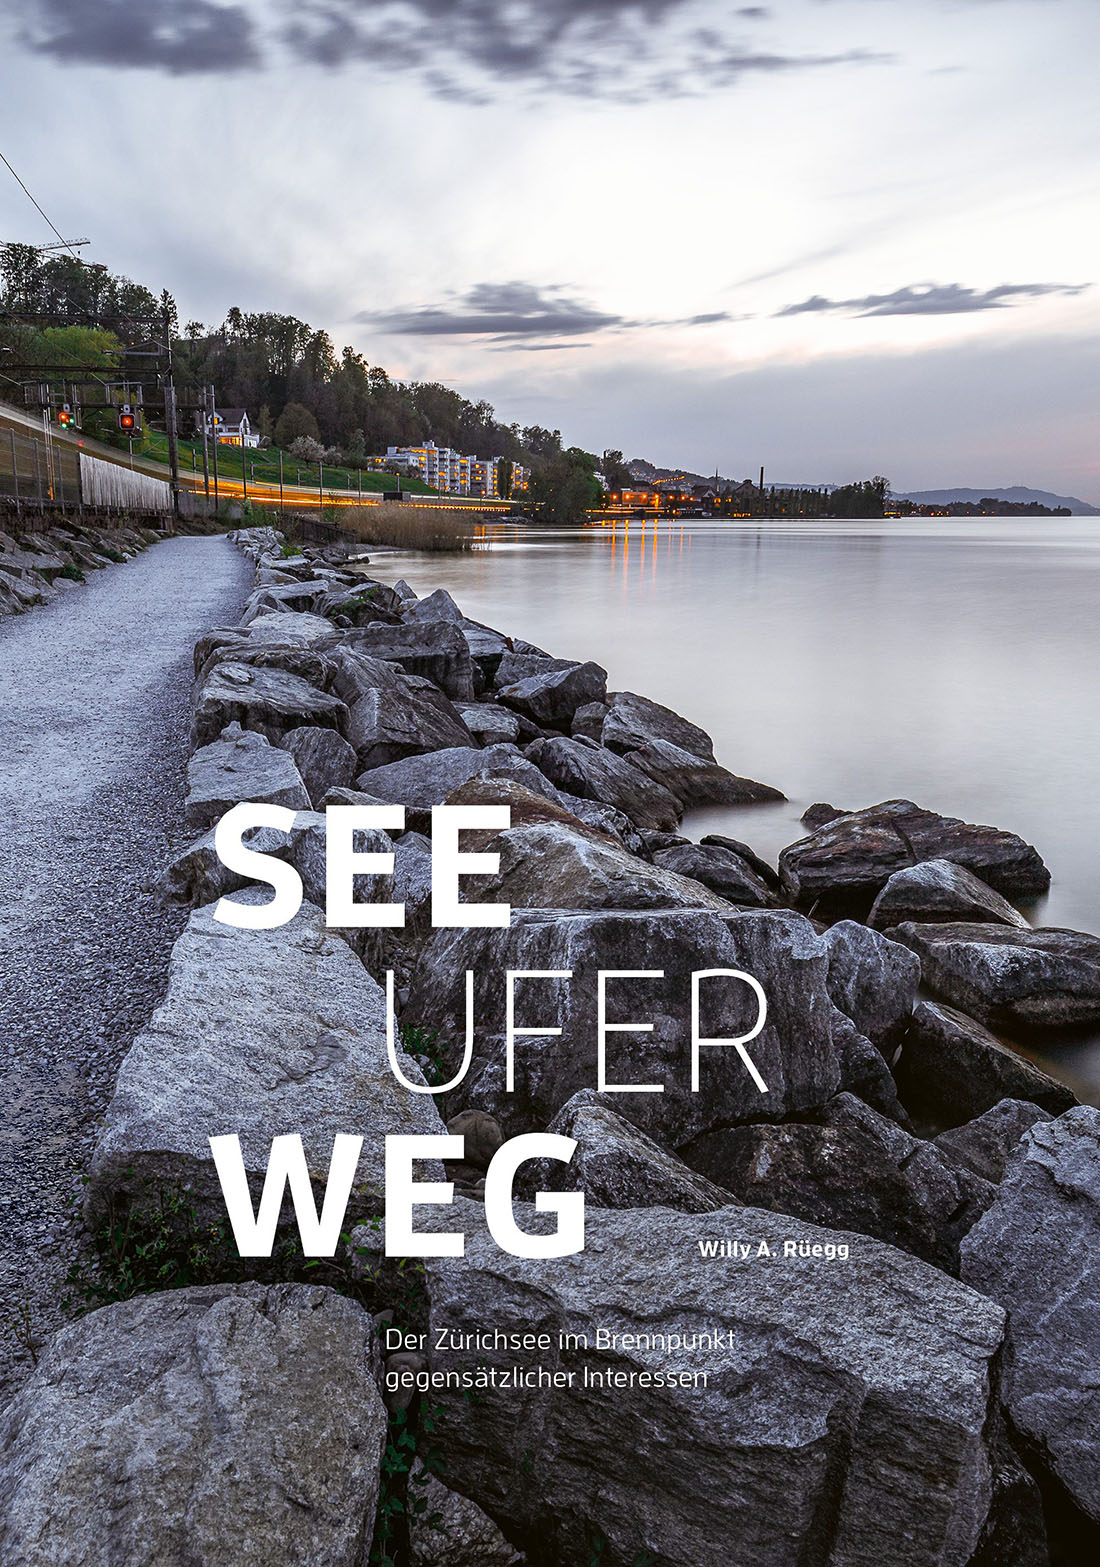 «Seeuferweg – der Zürichsee im Brennpunkt gegensätzlicher Interessen» von Willy A. Rüegg